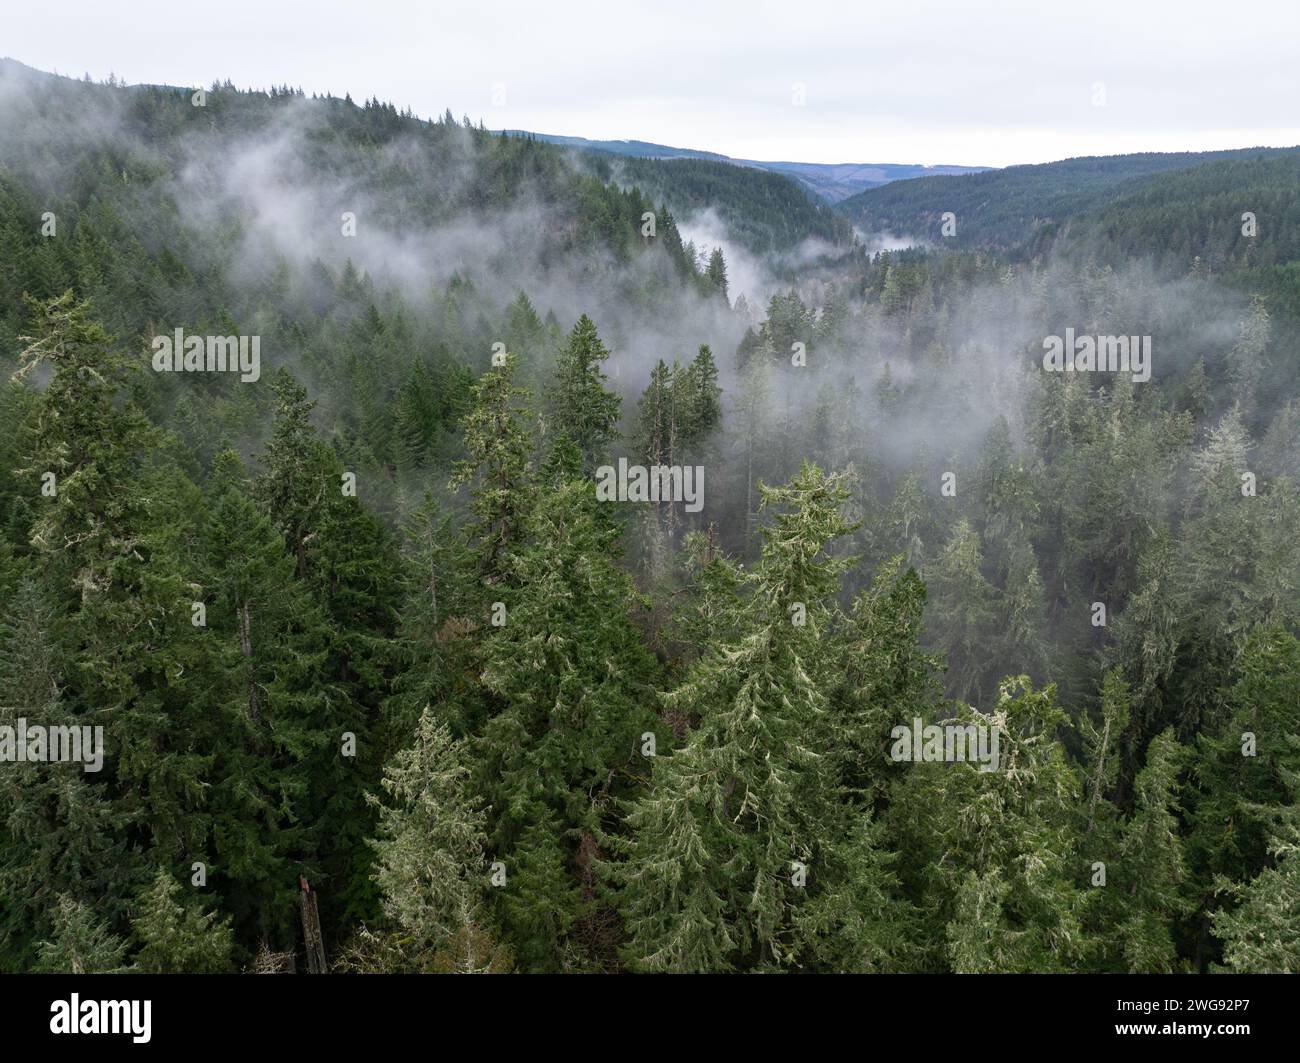 Foreste sane prosperano nella valle del fiume Molalla, in Oregon. Quest'area ospita ampie foreste, bellissimi percorsi escursionistici, ciclabili ed equestri. Foto Stock